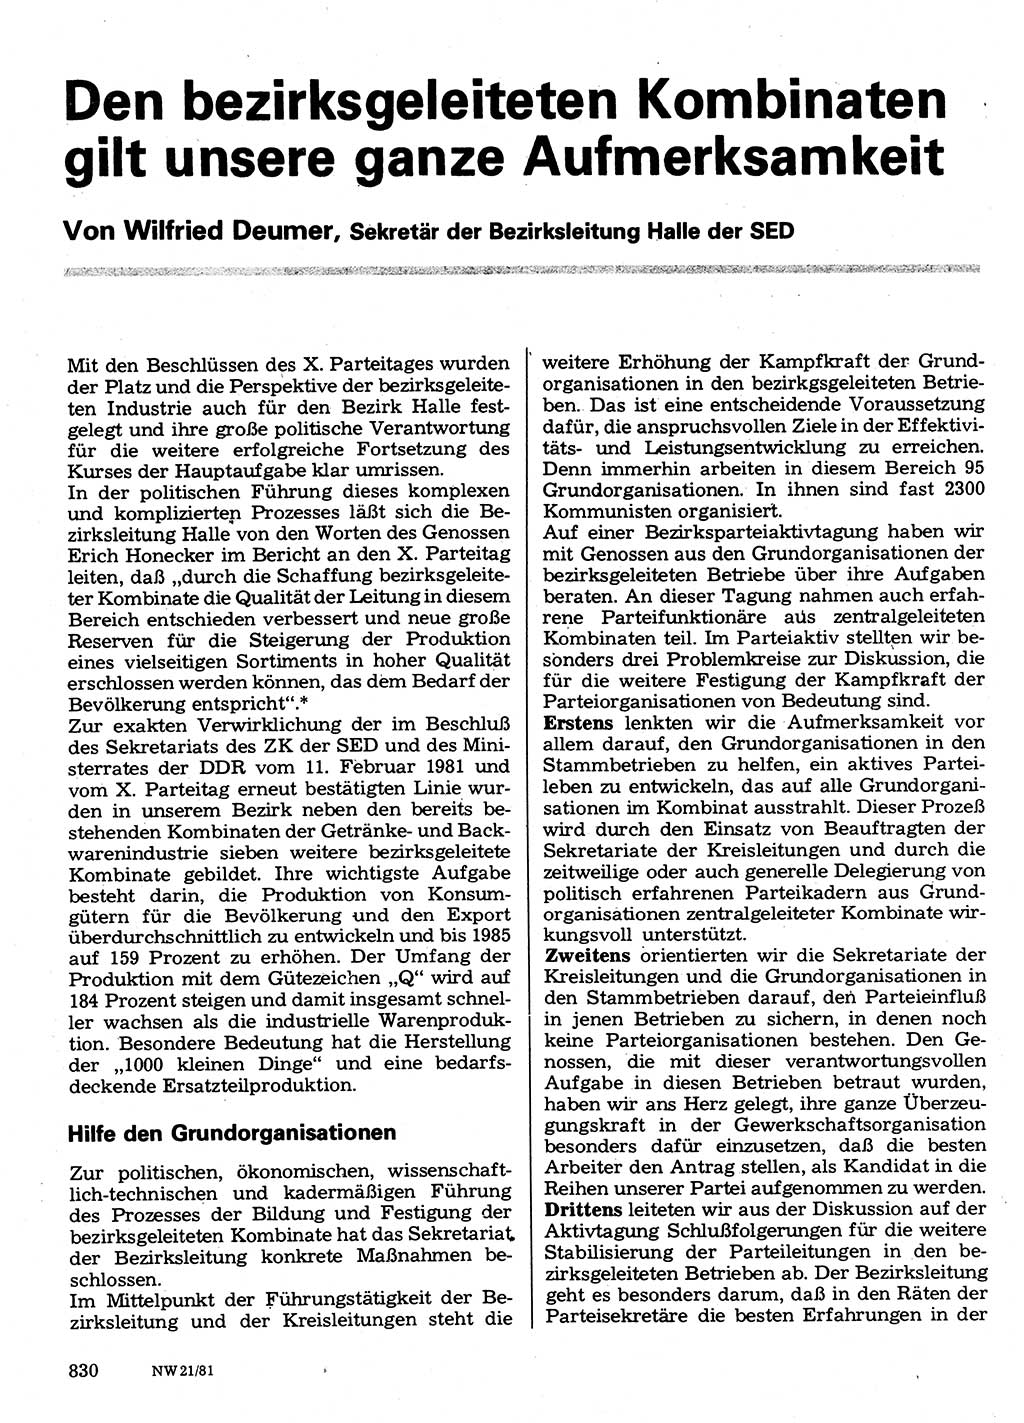 Neuer Weg (NW), Organ des Zentralkomitees (ZK) der SED (Sozialistische Einheitspartei Deutschlands) für Fragen des Parteilebens, 36. Jahrgang [Deutsche Demokratische Republik (DDR)] 1981, Seite 830 (NW ZK SED DDR 1981, S. 830)